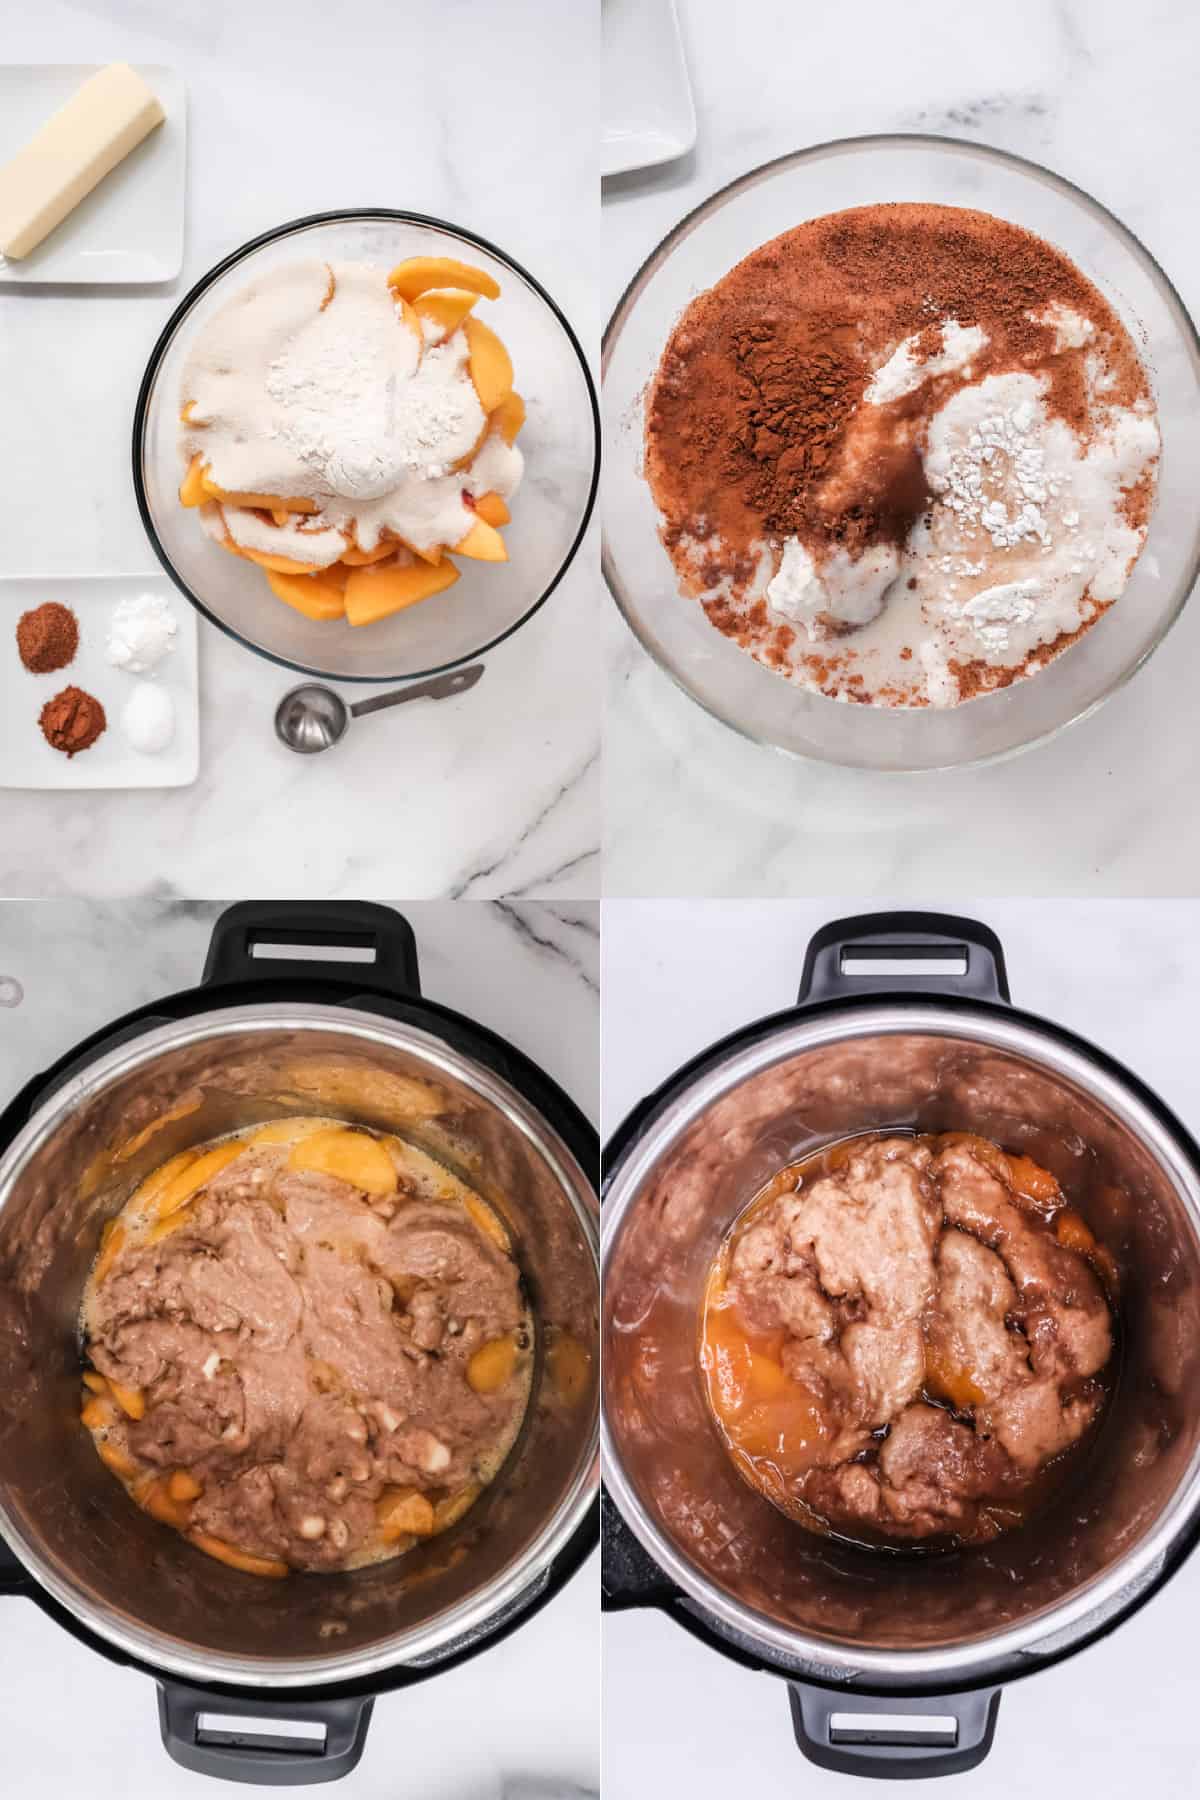 Instant Dutch Oven- Peach Cobbler – Instant Pot Recipes